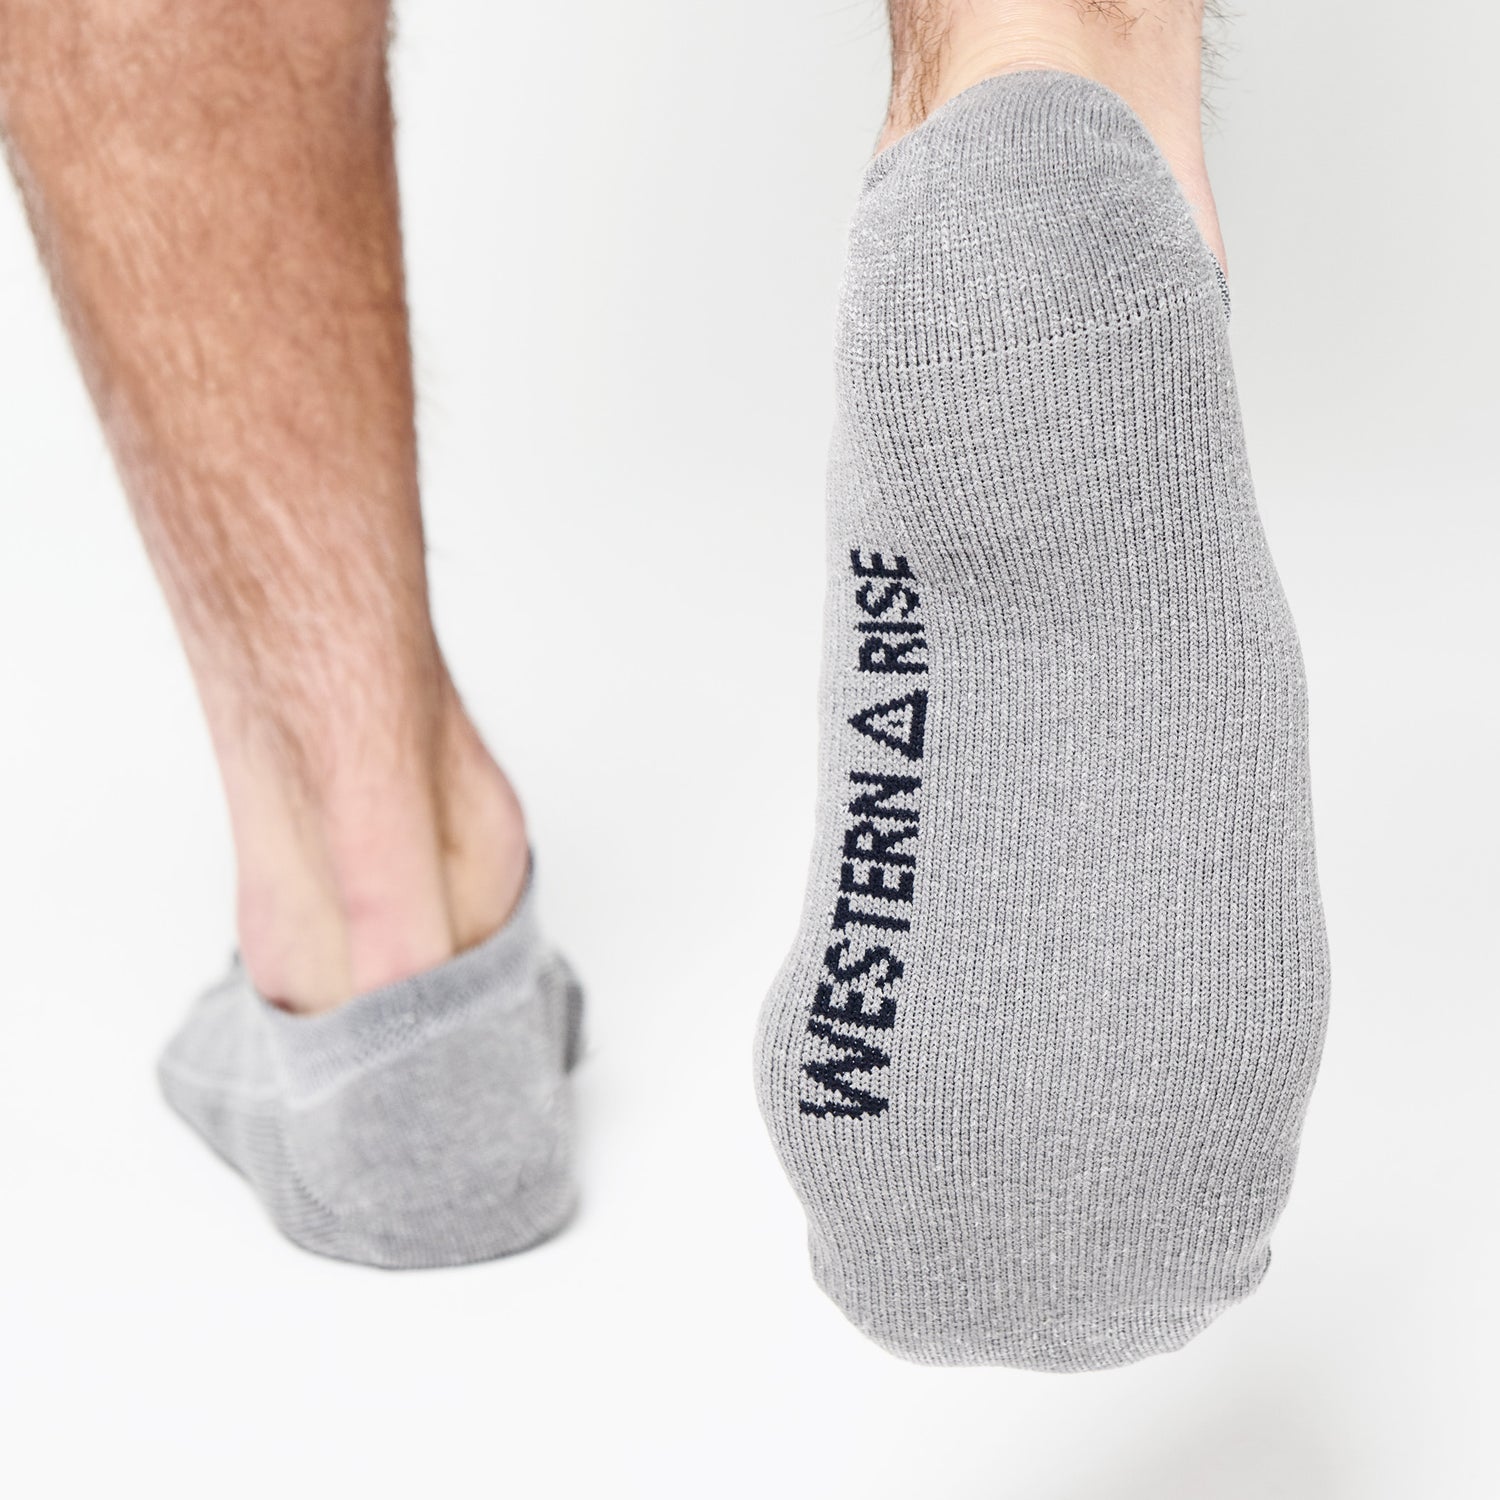 The Best Moisture-Wicking Socks